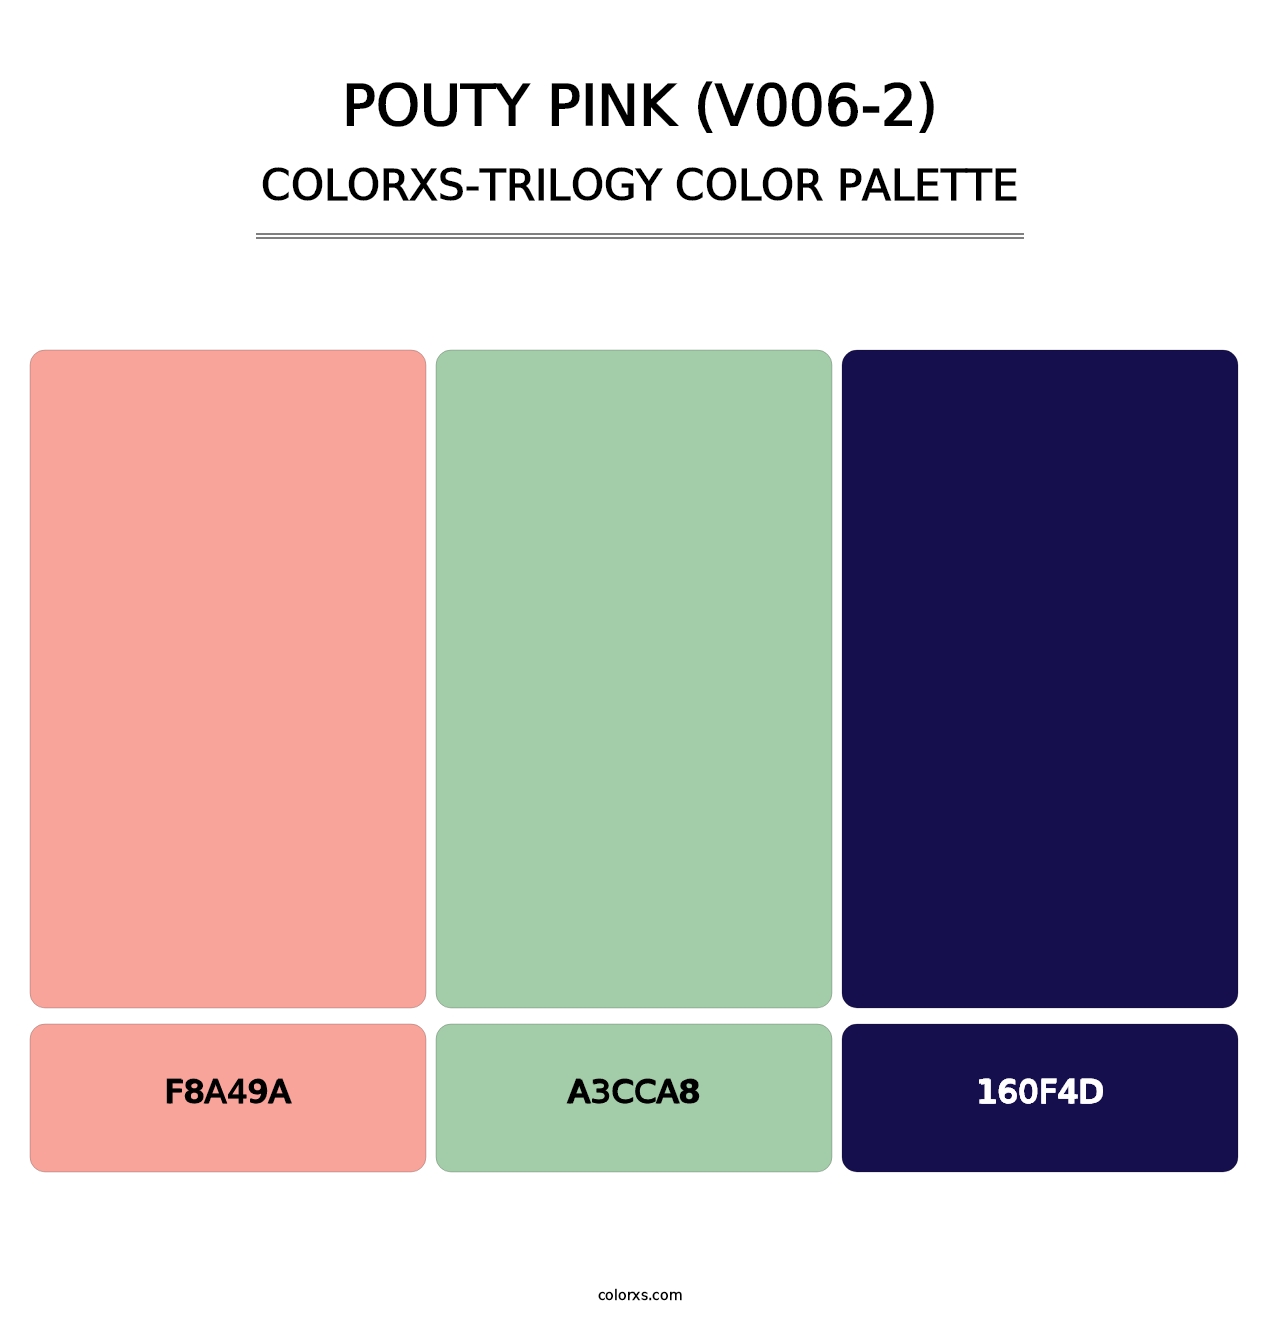 Pouty Pink (V006-2) - Colorxs Trilogy Palette